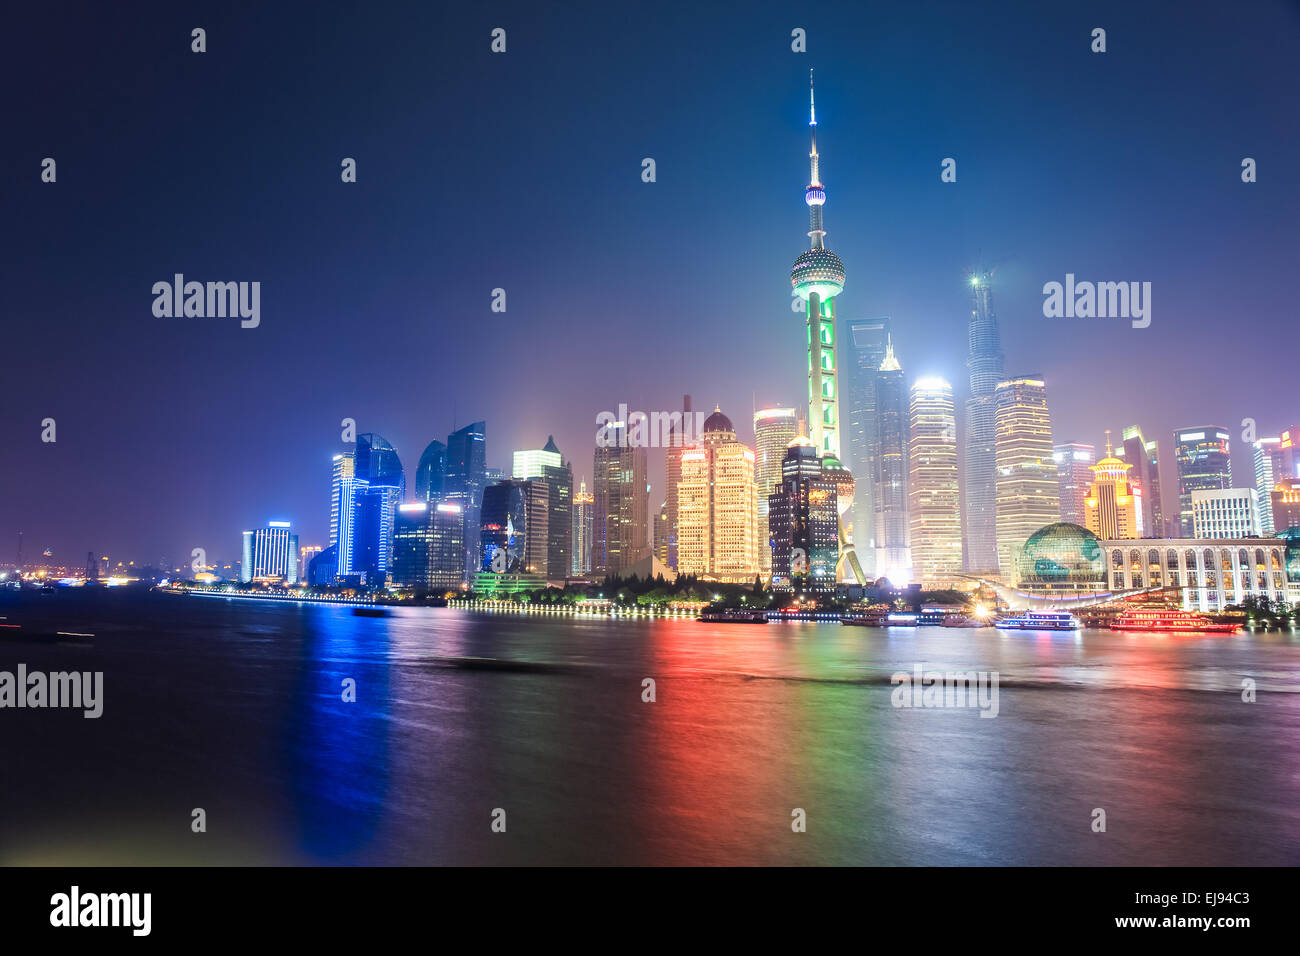 beautiful shanghai night scene Stock Photo